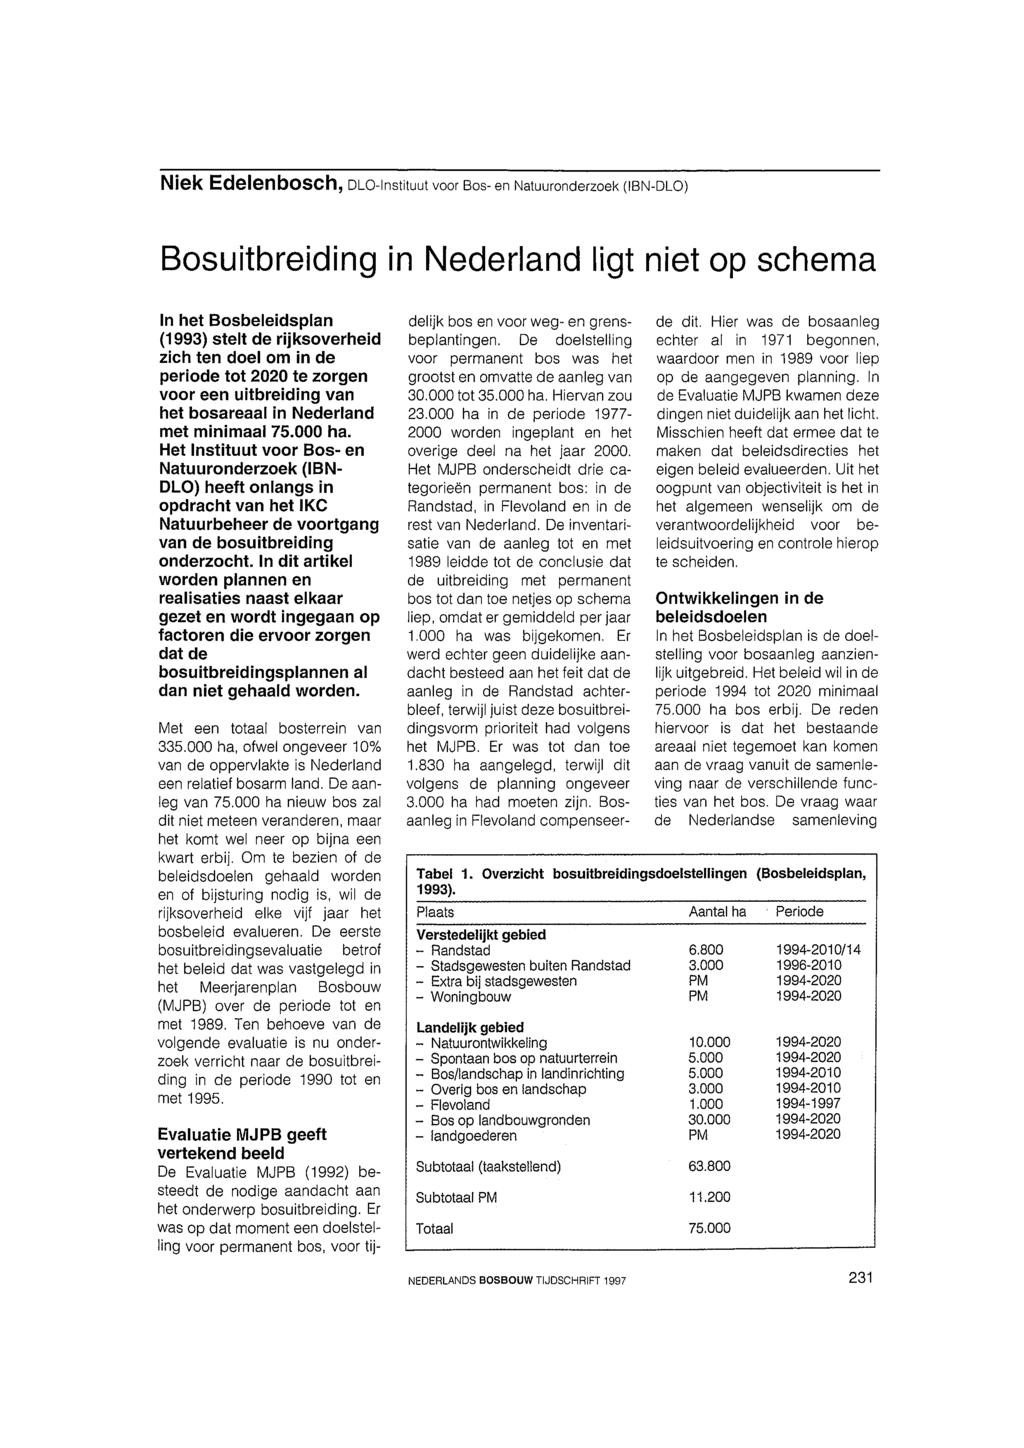 Niek Edelenbosch, DLO-Instituut voor BOS- en Natuuronderzoek (IBN-DLO) Bosuitbreiding in Nederland ligt niet op schema In het Bosbeleidsplan (1 993) stelt de rijksoverheid zich ten doel om in de